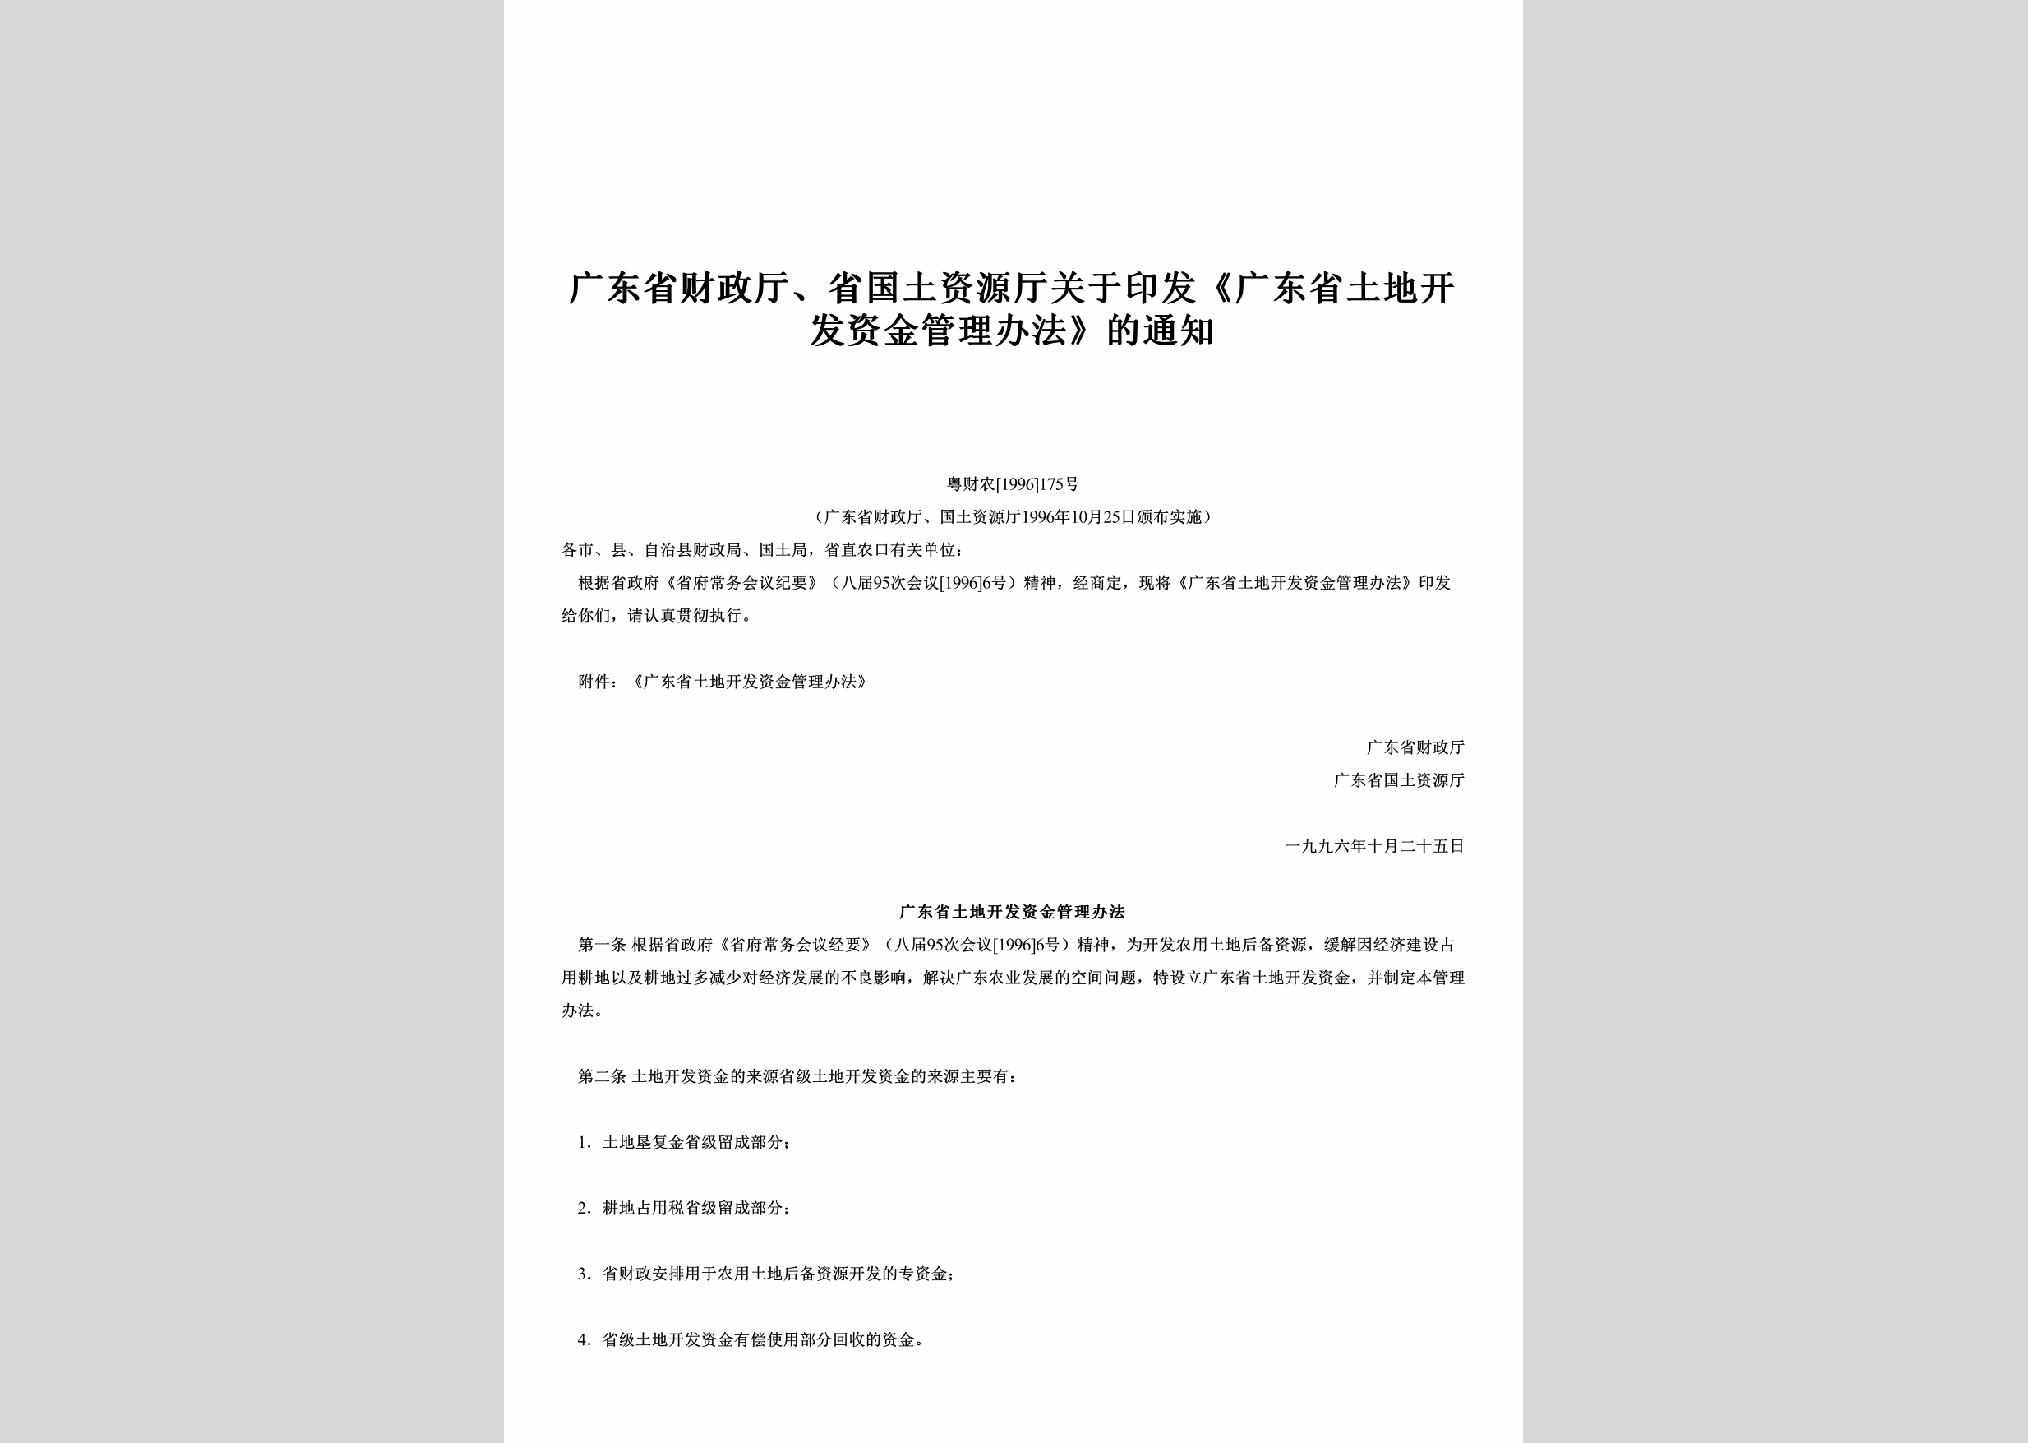 粤财农[1996]175号：关于印发《广东省土地开发资金管理办法》的通知